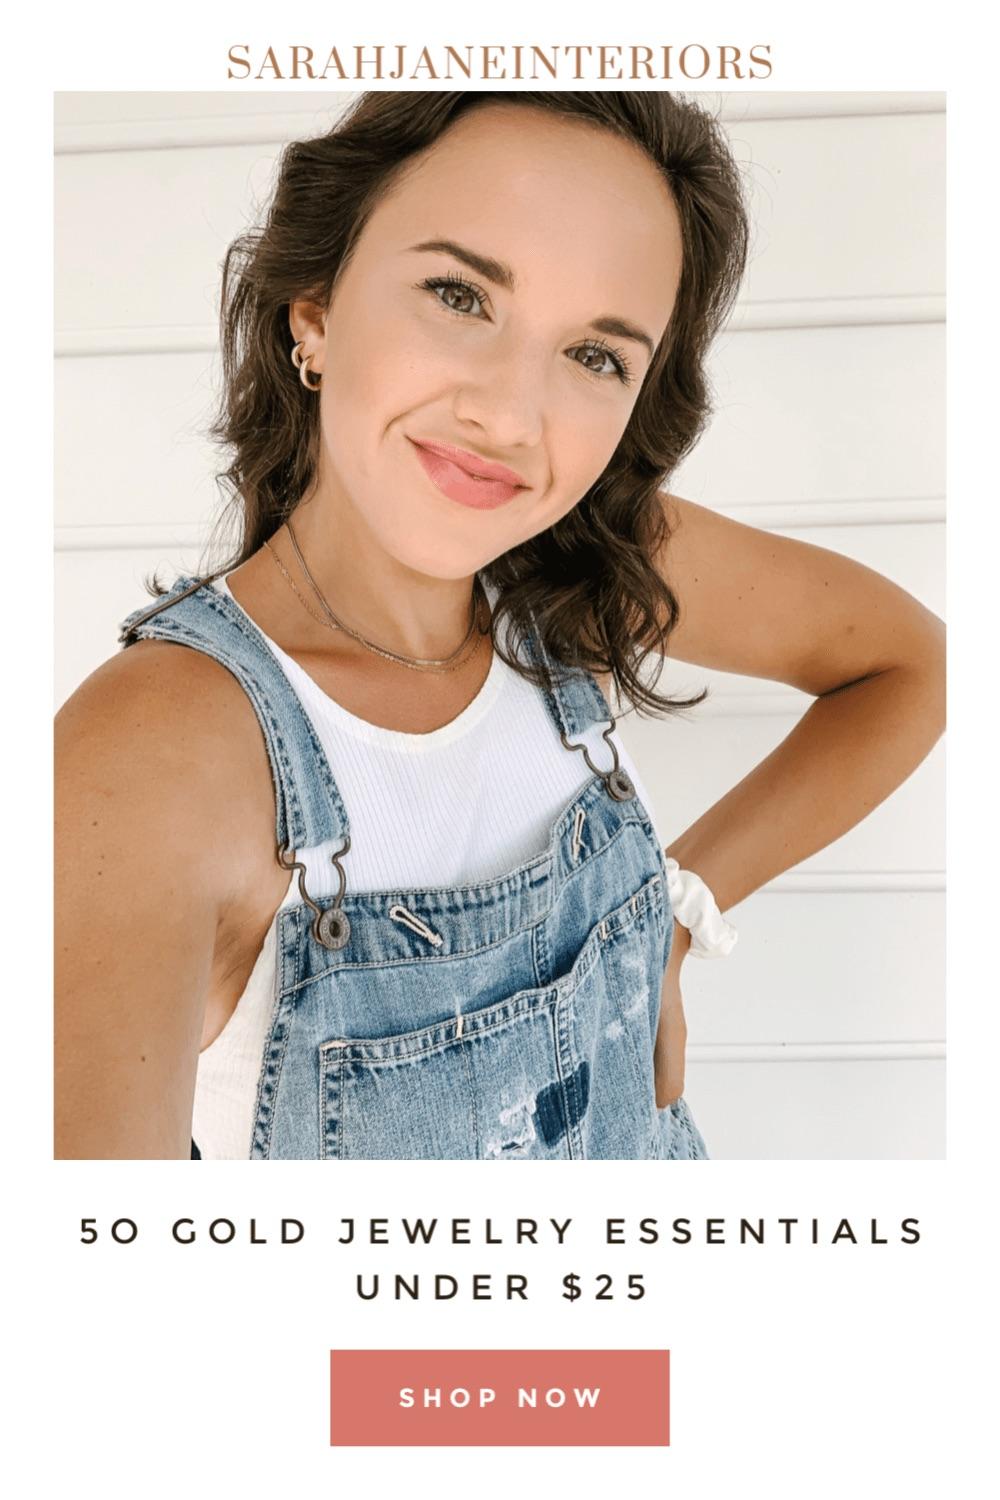 gold jewelry essentials under $25